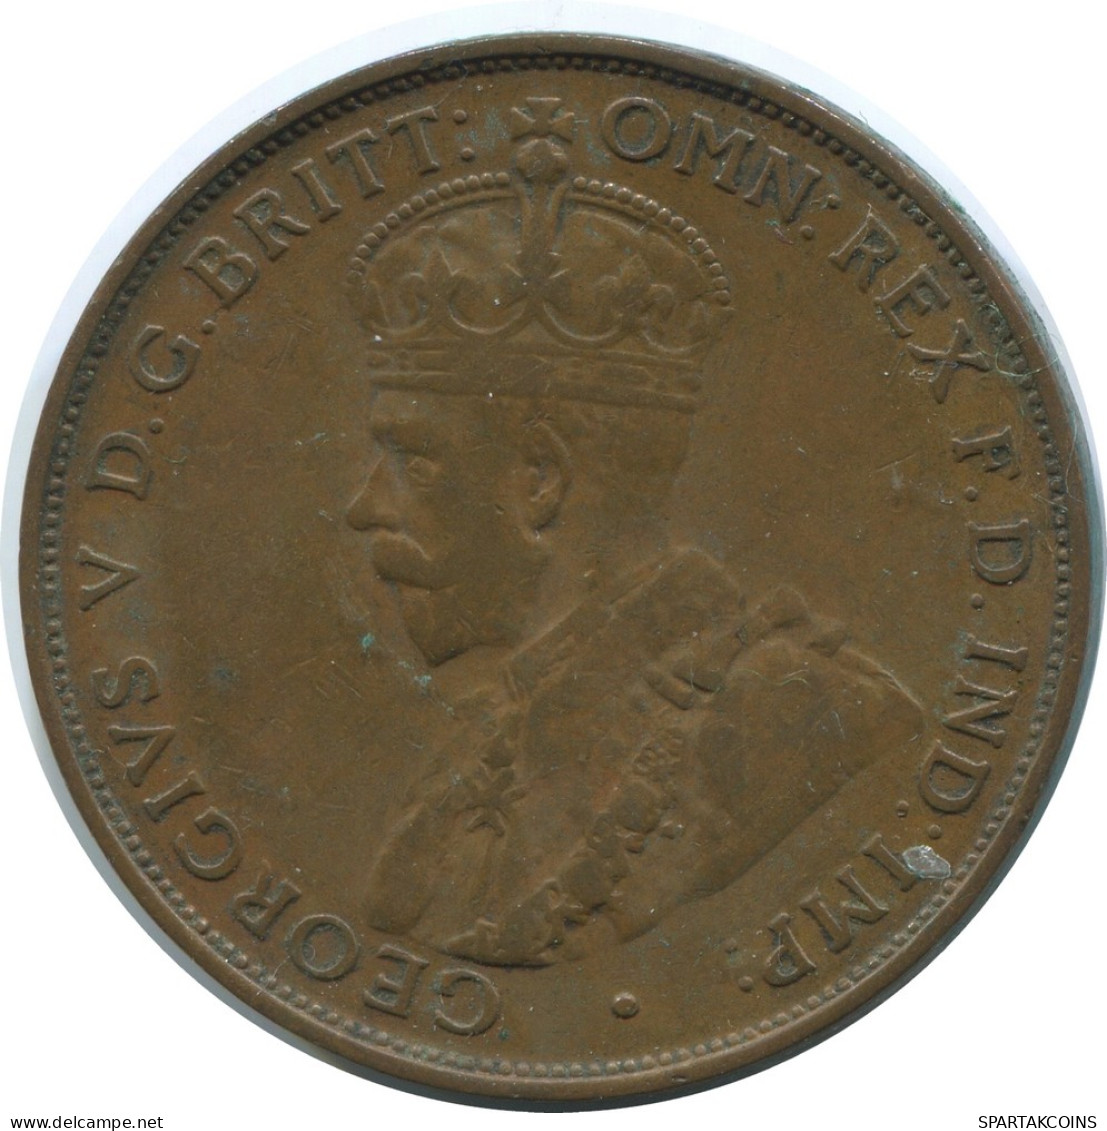 1 PENNI 1933 AUSTRALIA Coin #AE787.16.U - Penny